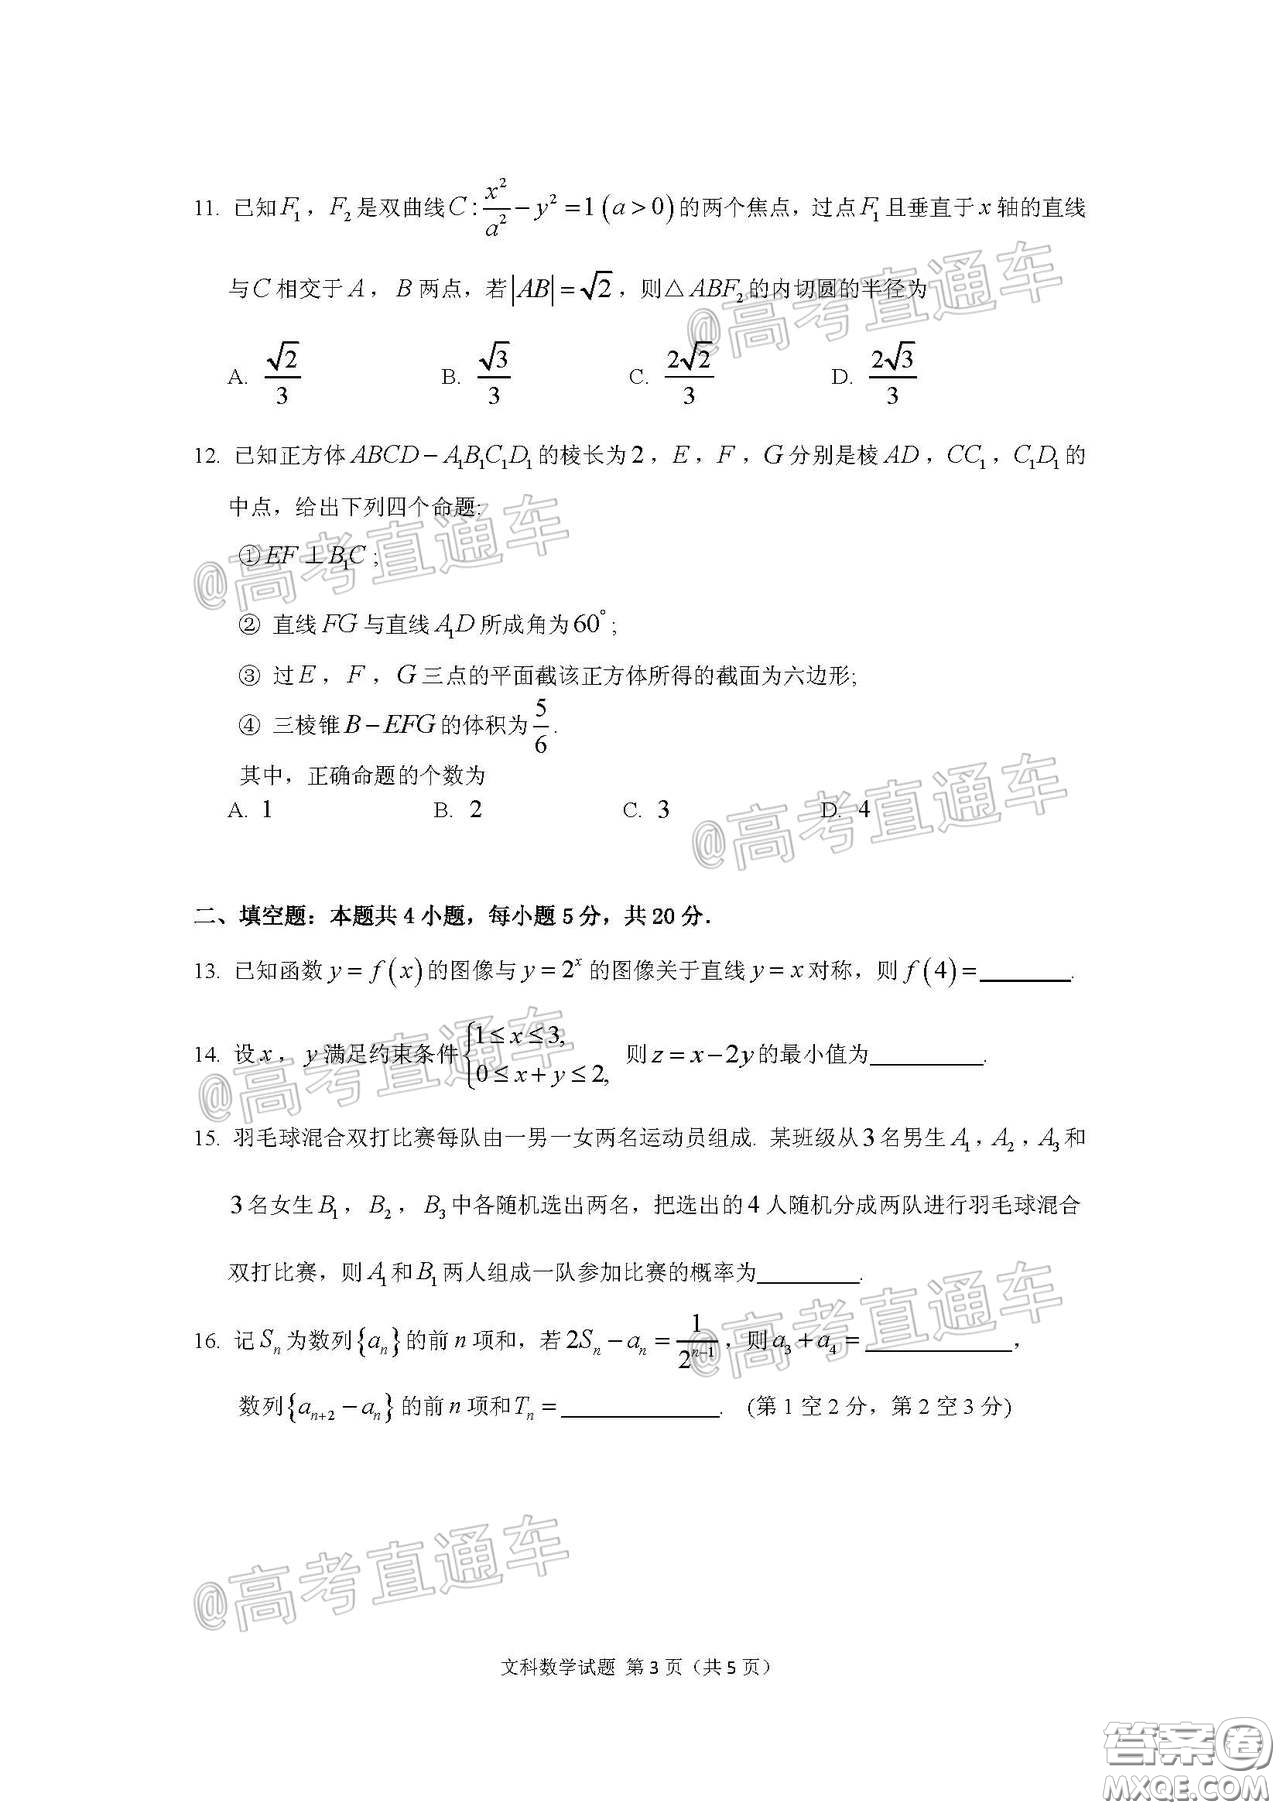 广州市2020届高三年级阶段训练题文科数学试题及答案